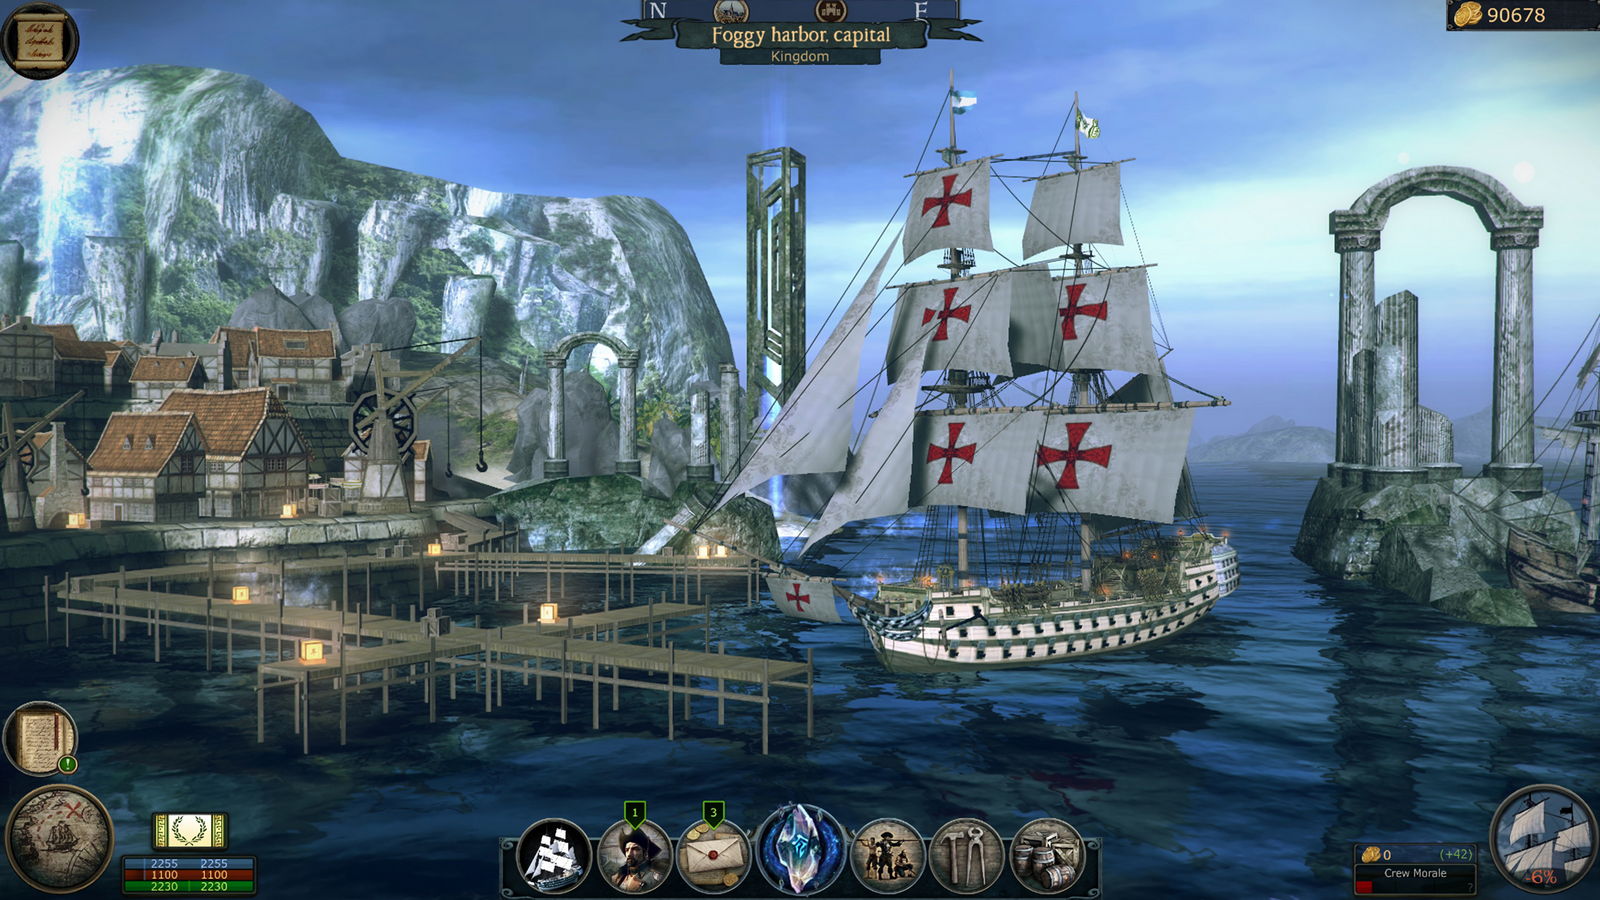 Tempest игра. Tempest RPG. Tempest Pirate Action RPG карта. Pirates Flag－Caribbean Sea RPG. Игра пираты с открытым миром